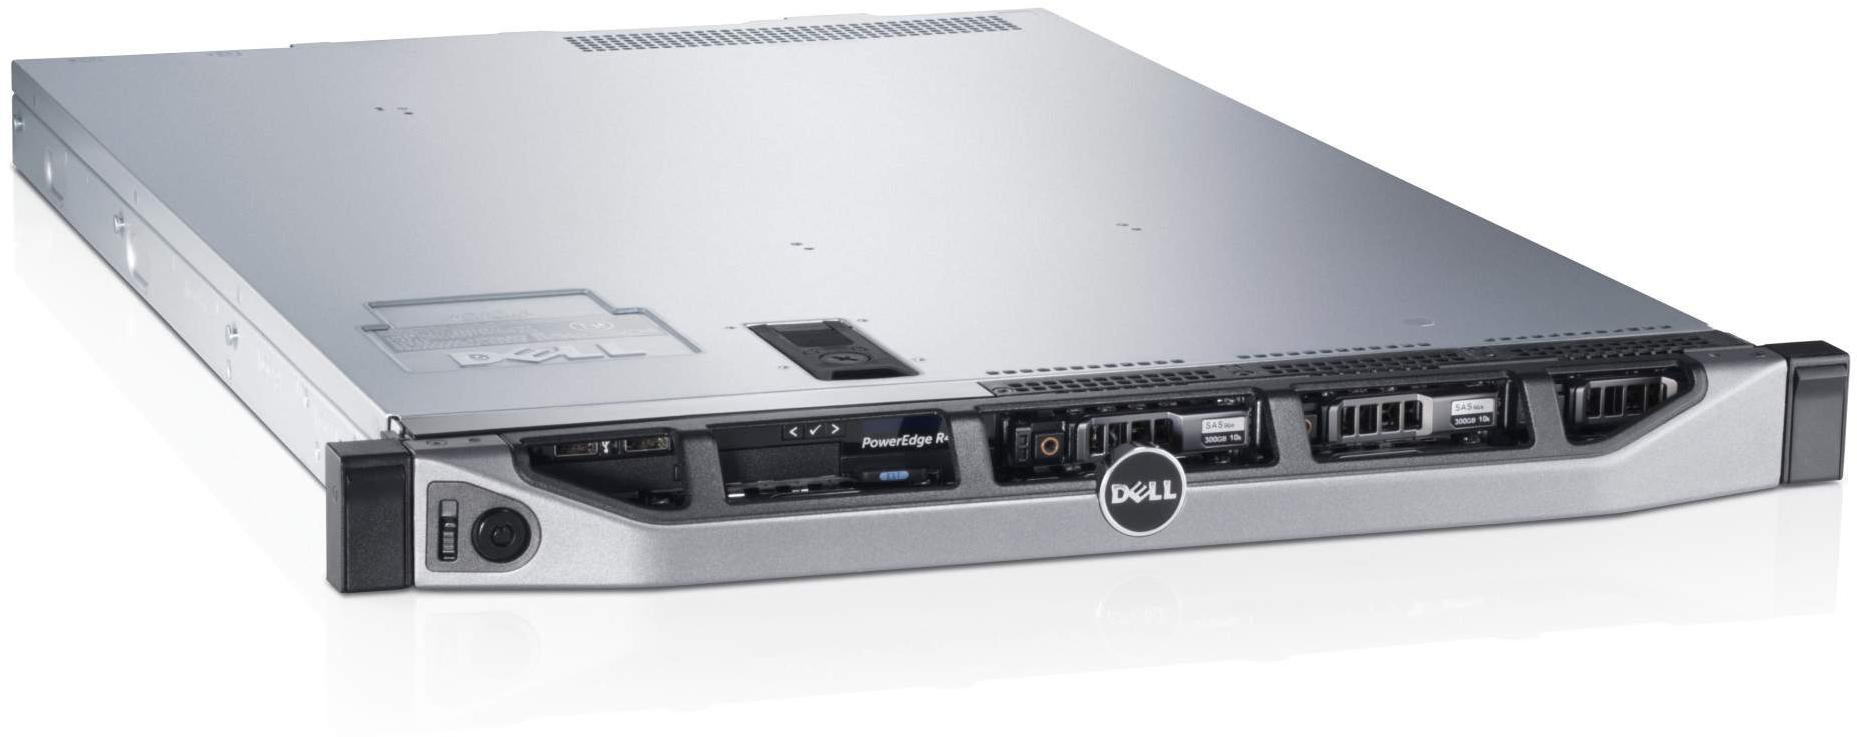     Dell PowerEdge R420 (210-39988/17)  1